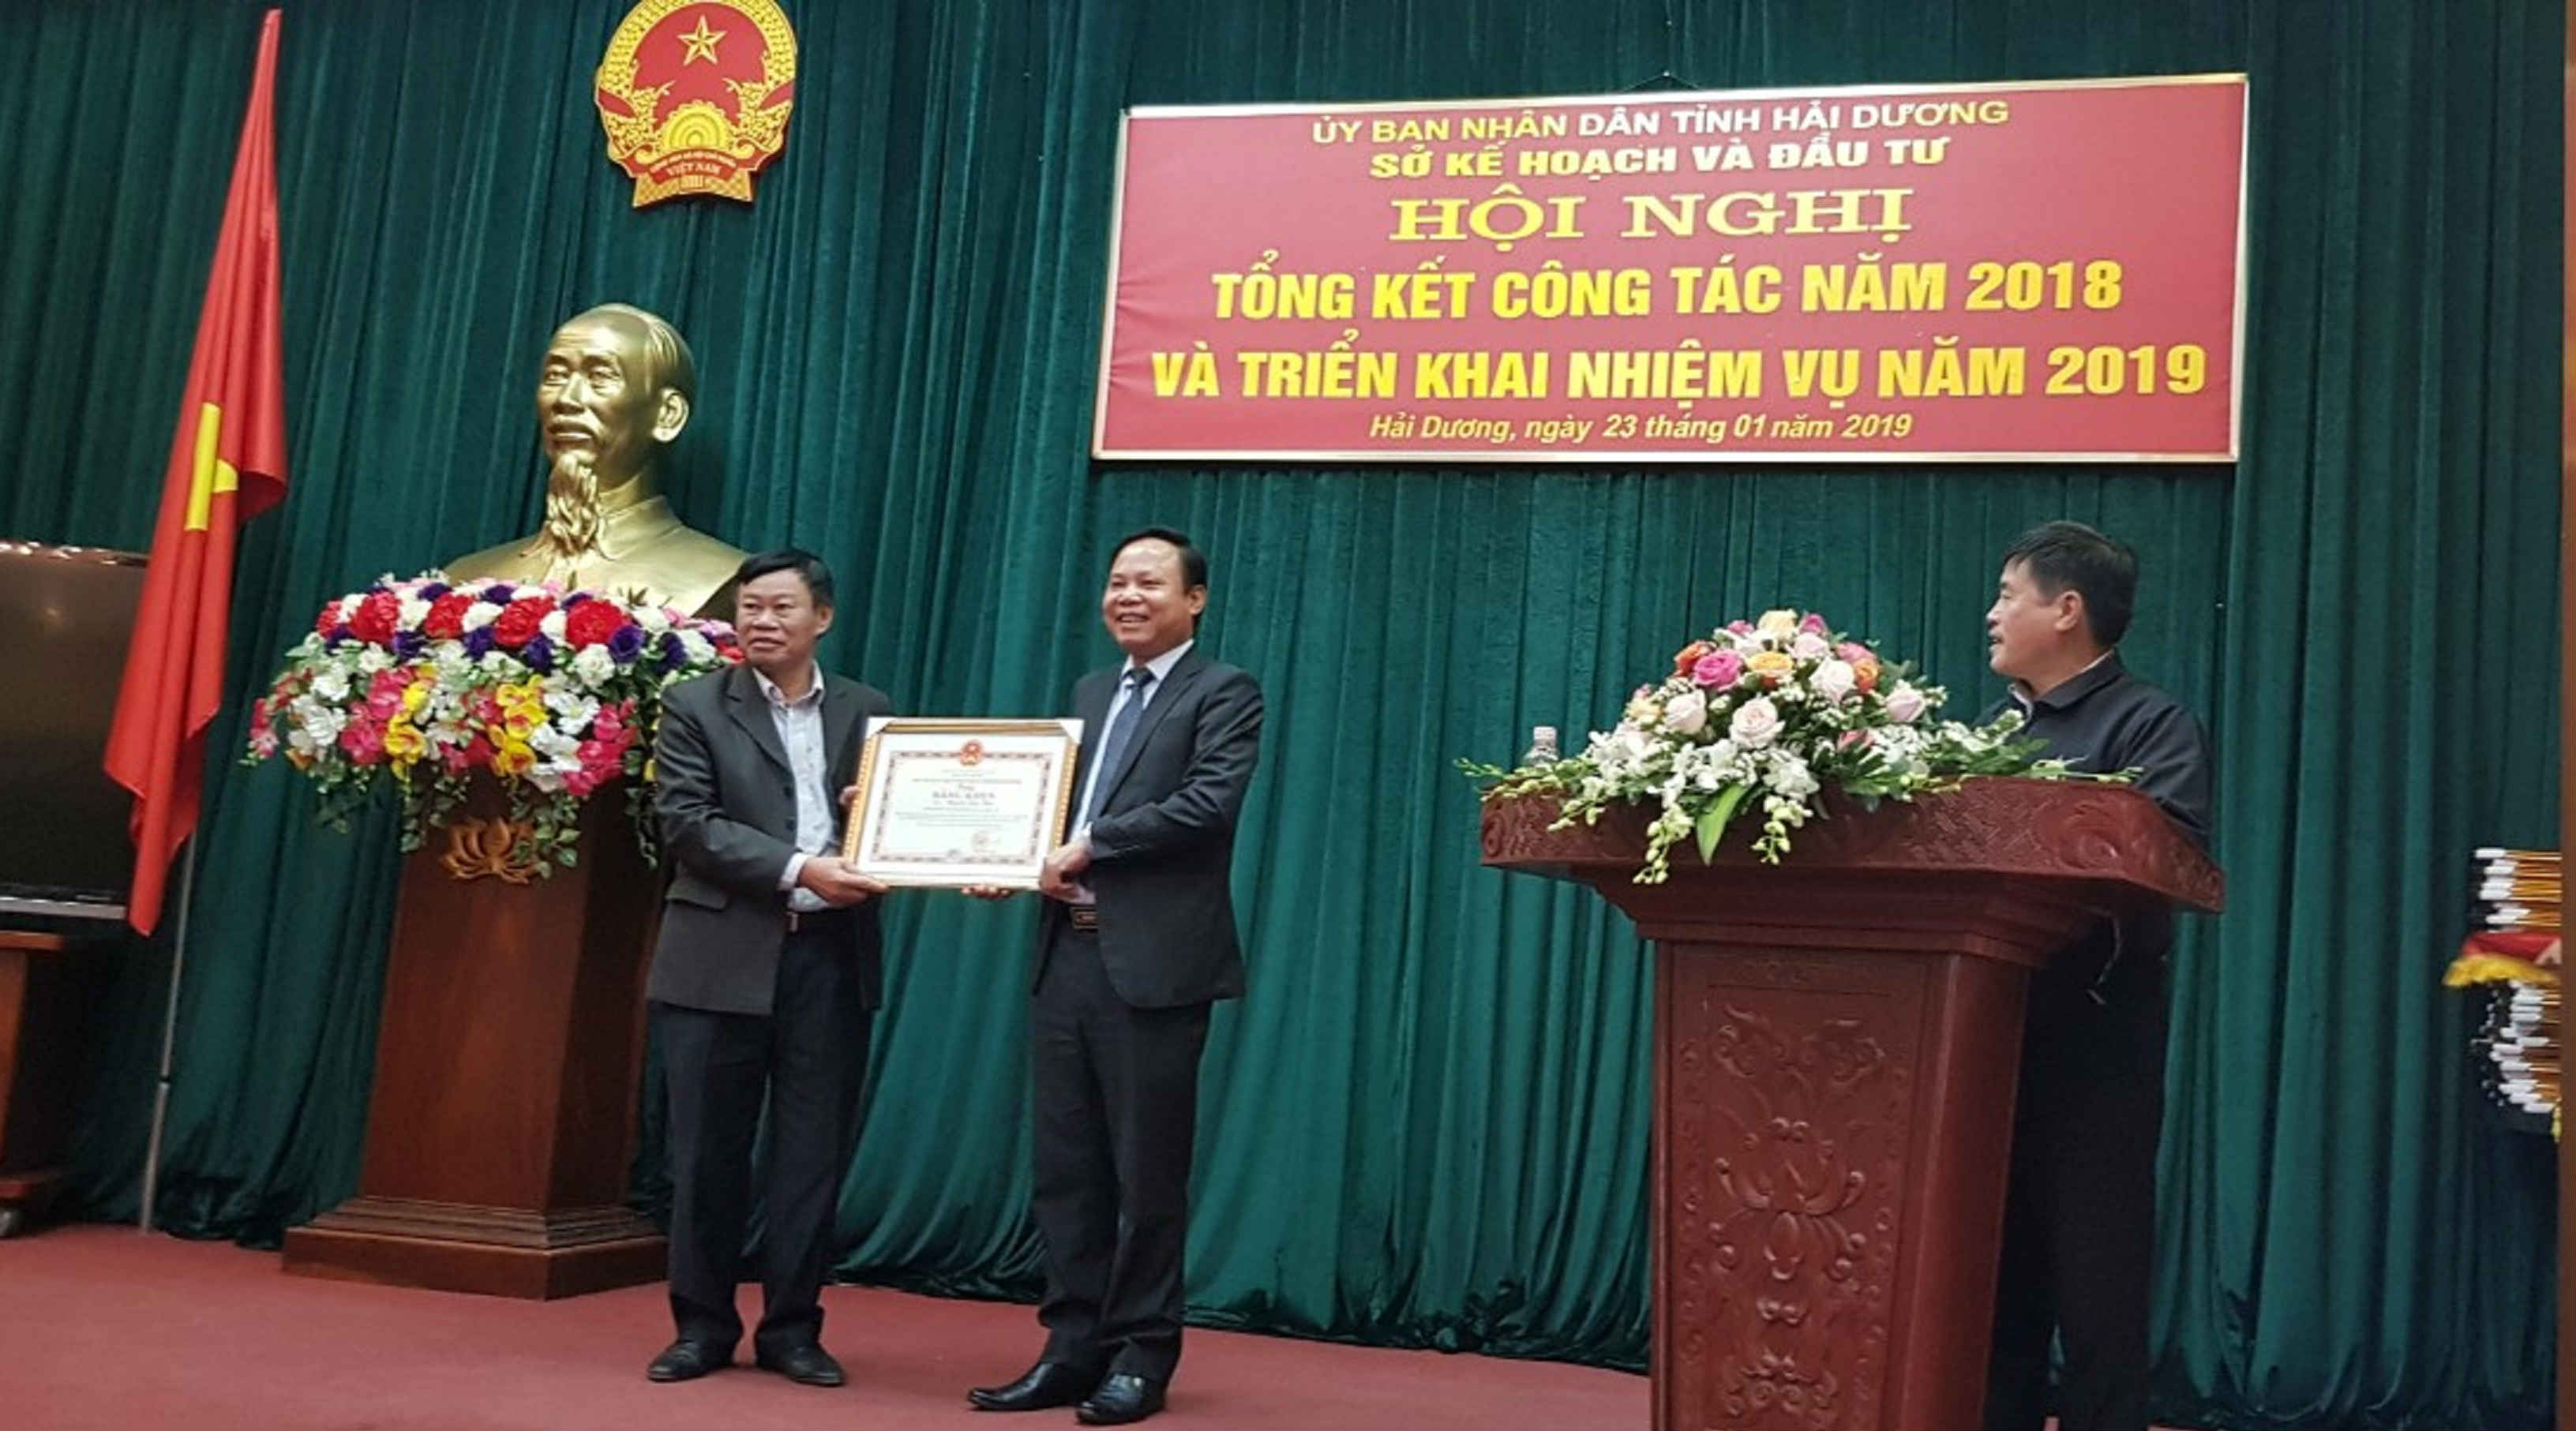 Ông Vương Đức Sáng, Phó Chủ tịch UBND tỉnh Hải Dương trao bằng khen cho sở KHĐT Hải Dương